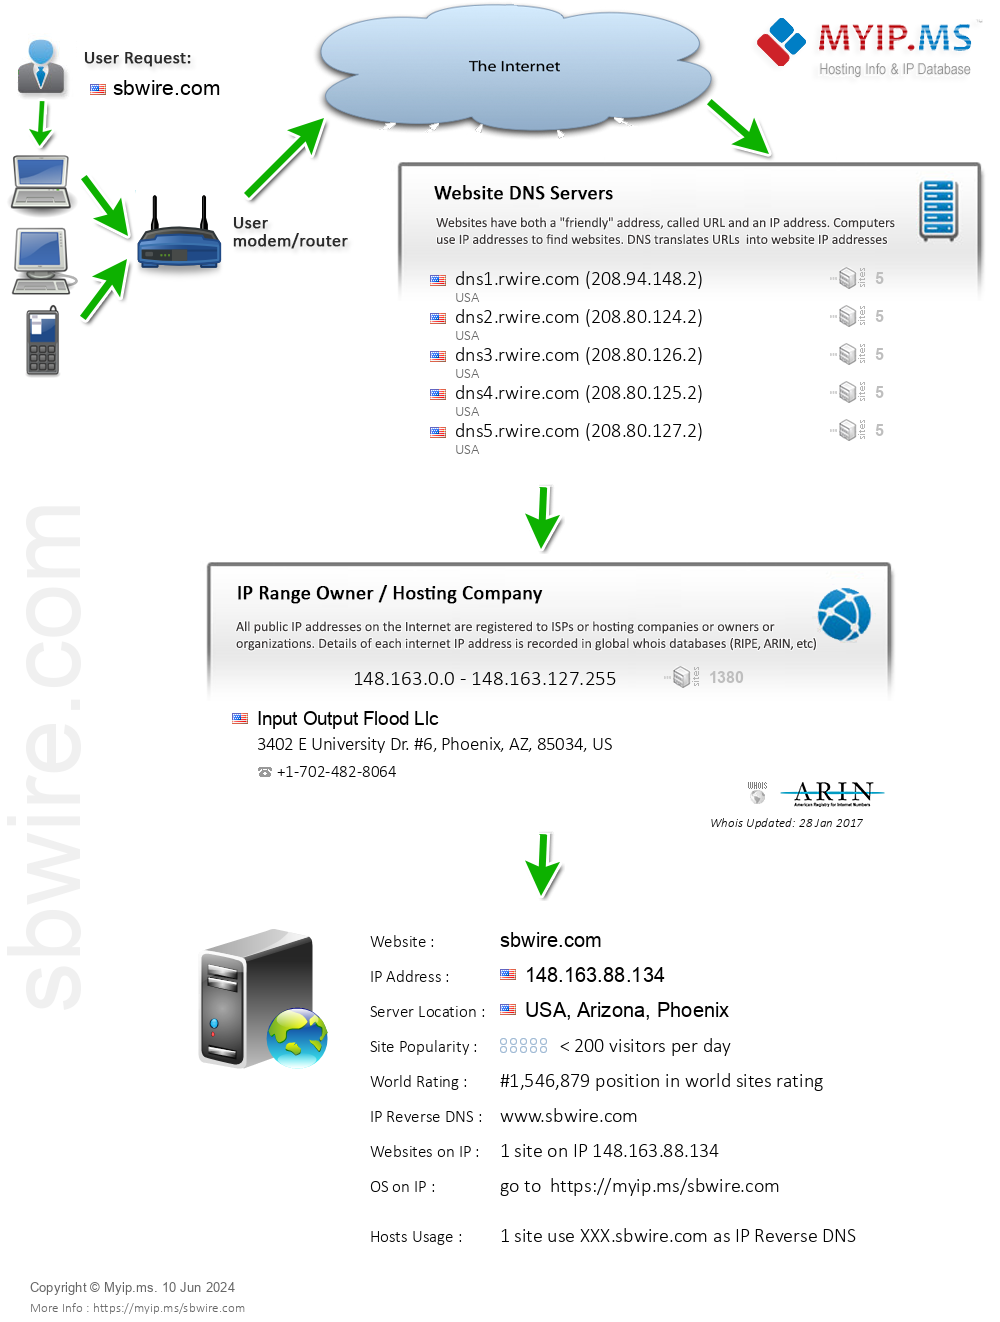 Sbwire.com - Website Hosting Visual IP Diagram